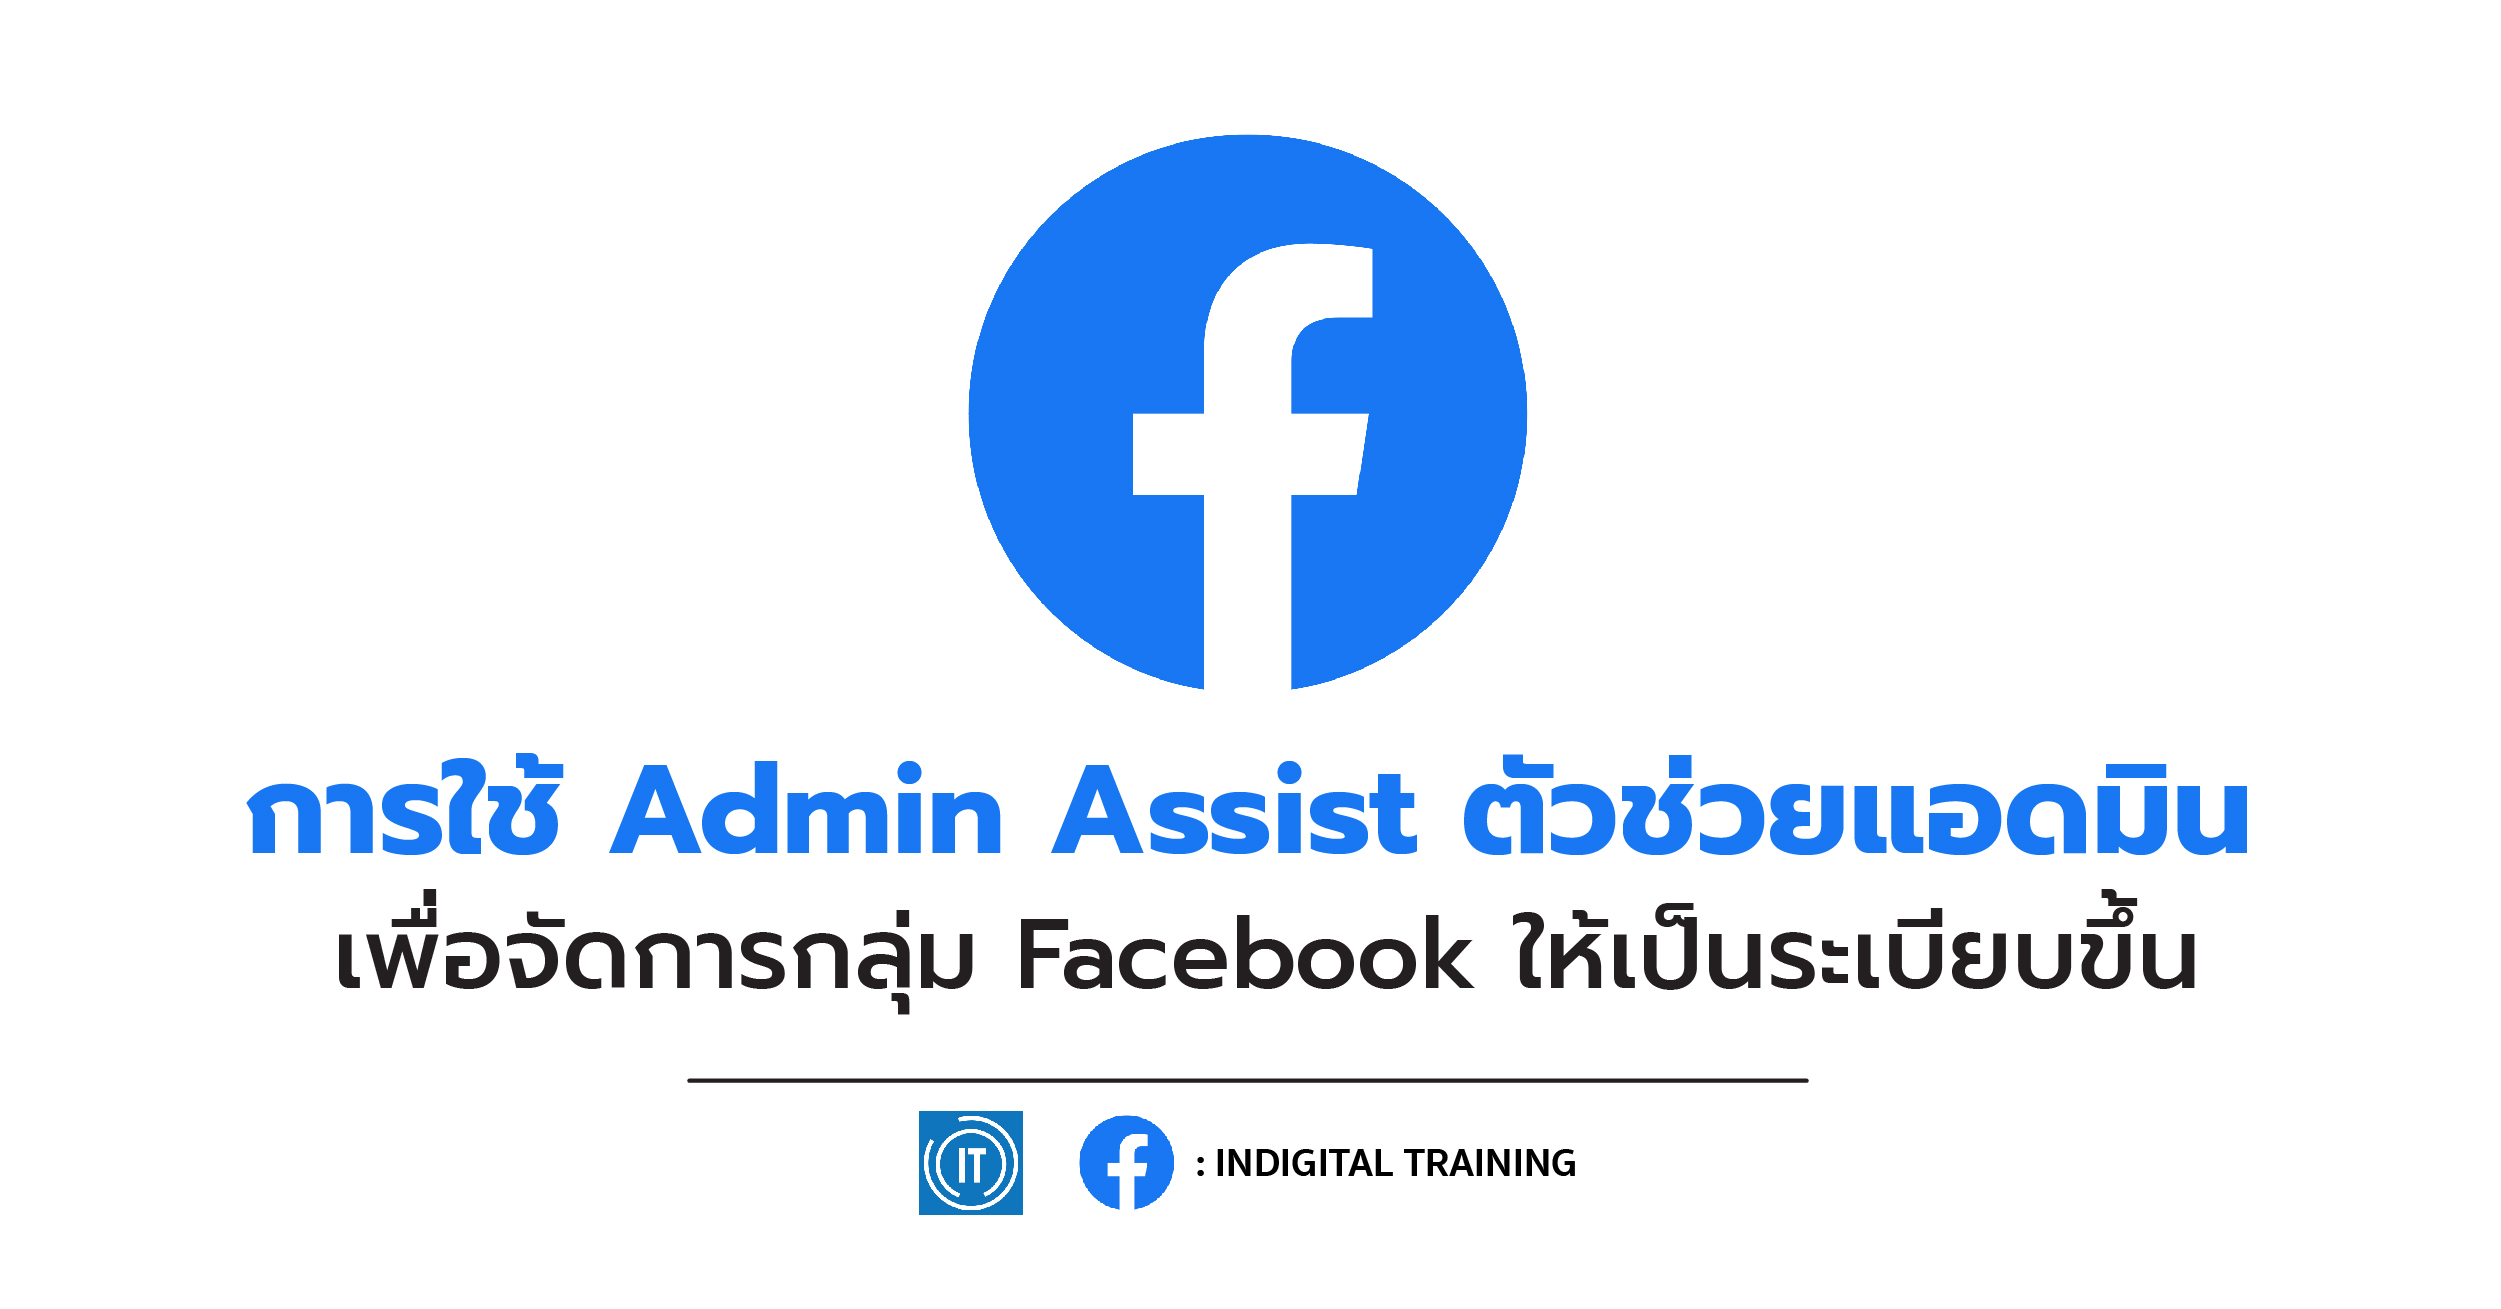 การใช้ Admin Assist ตัวช่วยแอดมิน เพื่อจัดการกลุ่ม Facebook ให้เป็นระเบียบขึ้น